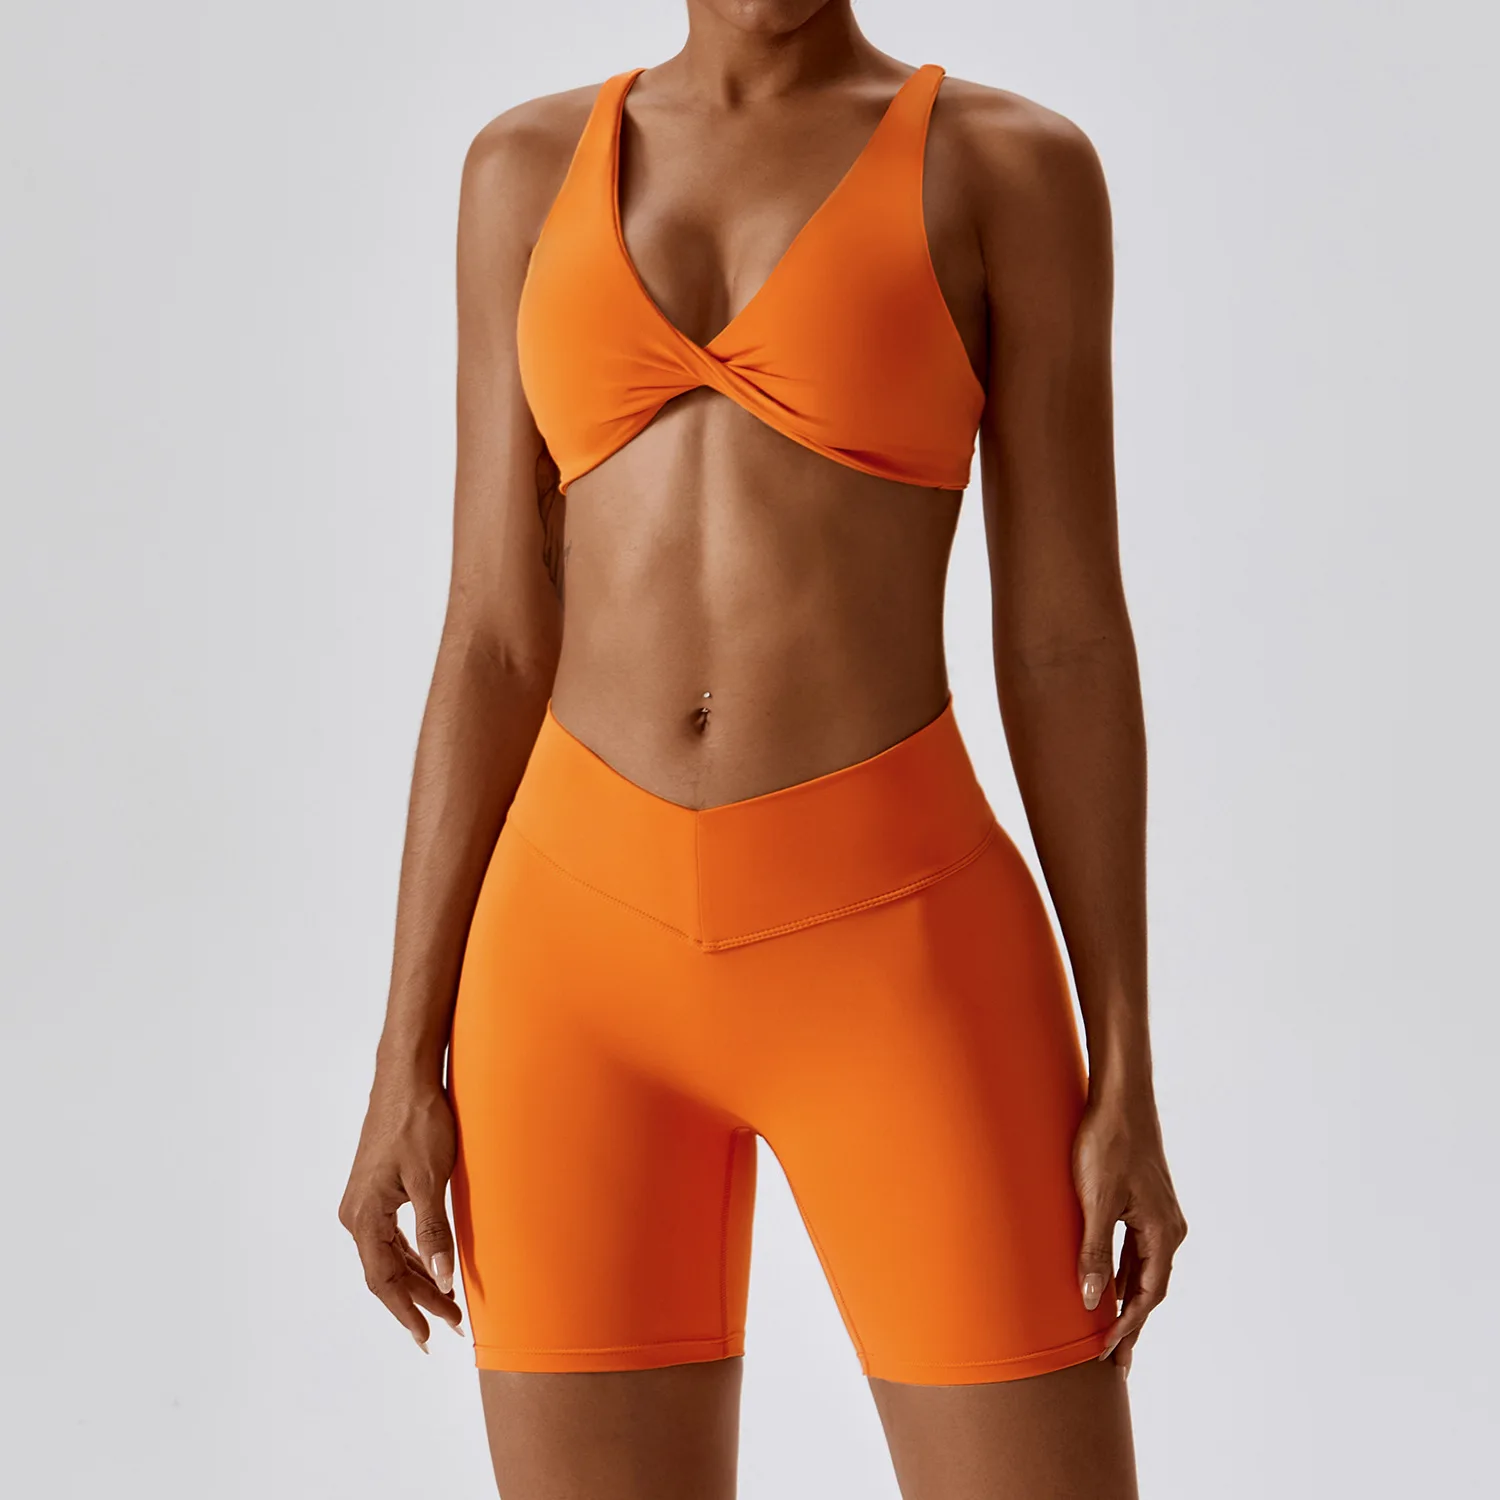 Wholesale Custom Breathable Scrunch Sexy Sports Bras Leggings Sets Workout Fitness Wear Sportswear Women Yoga Sets